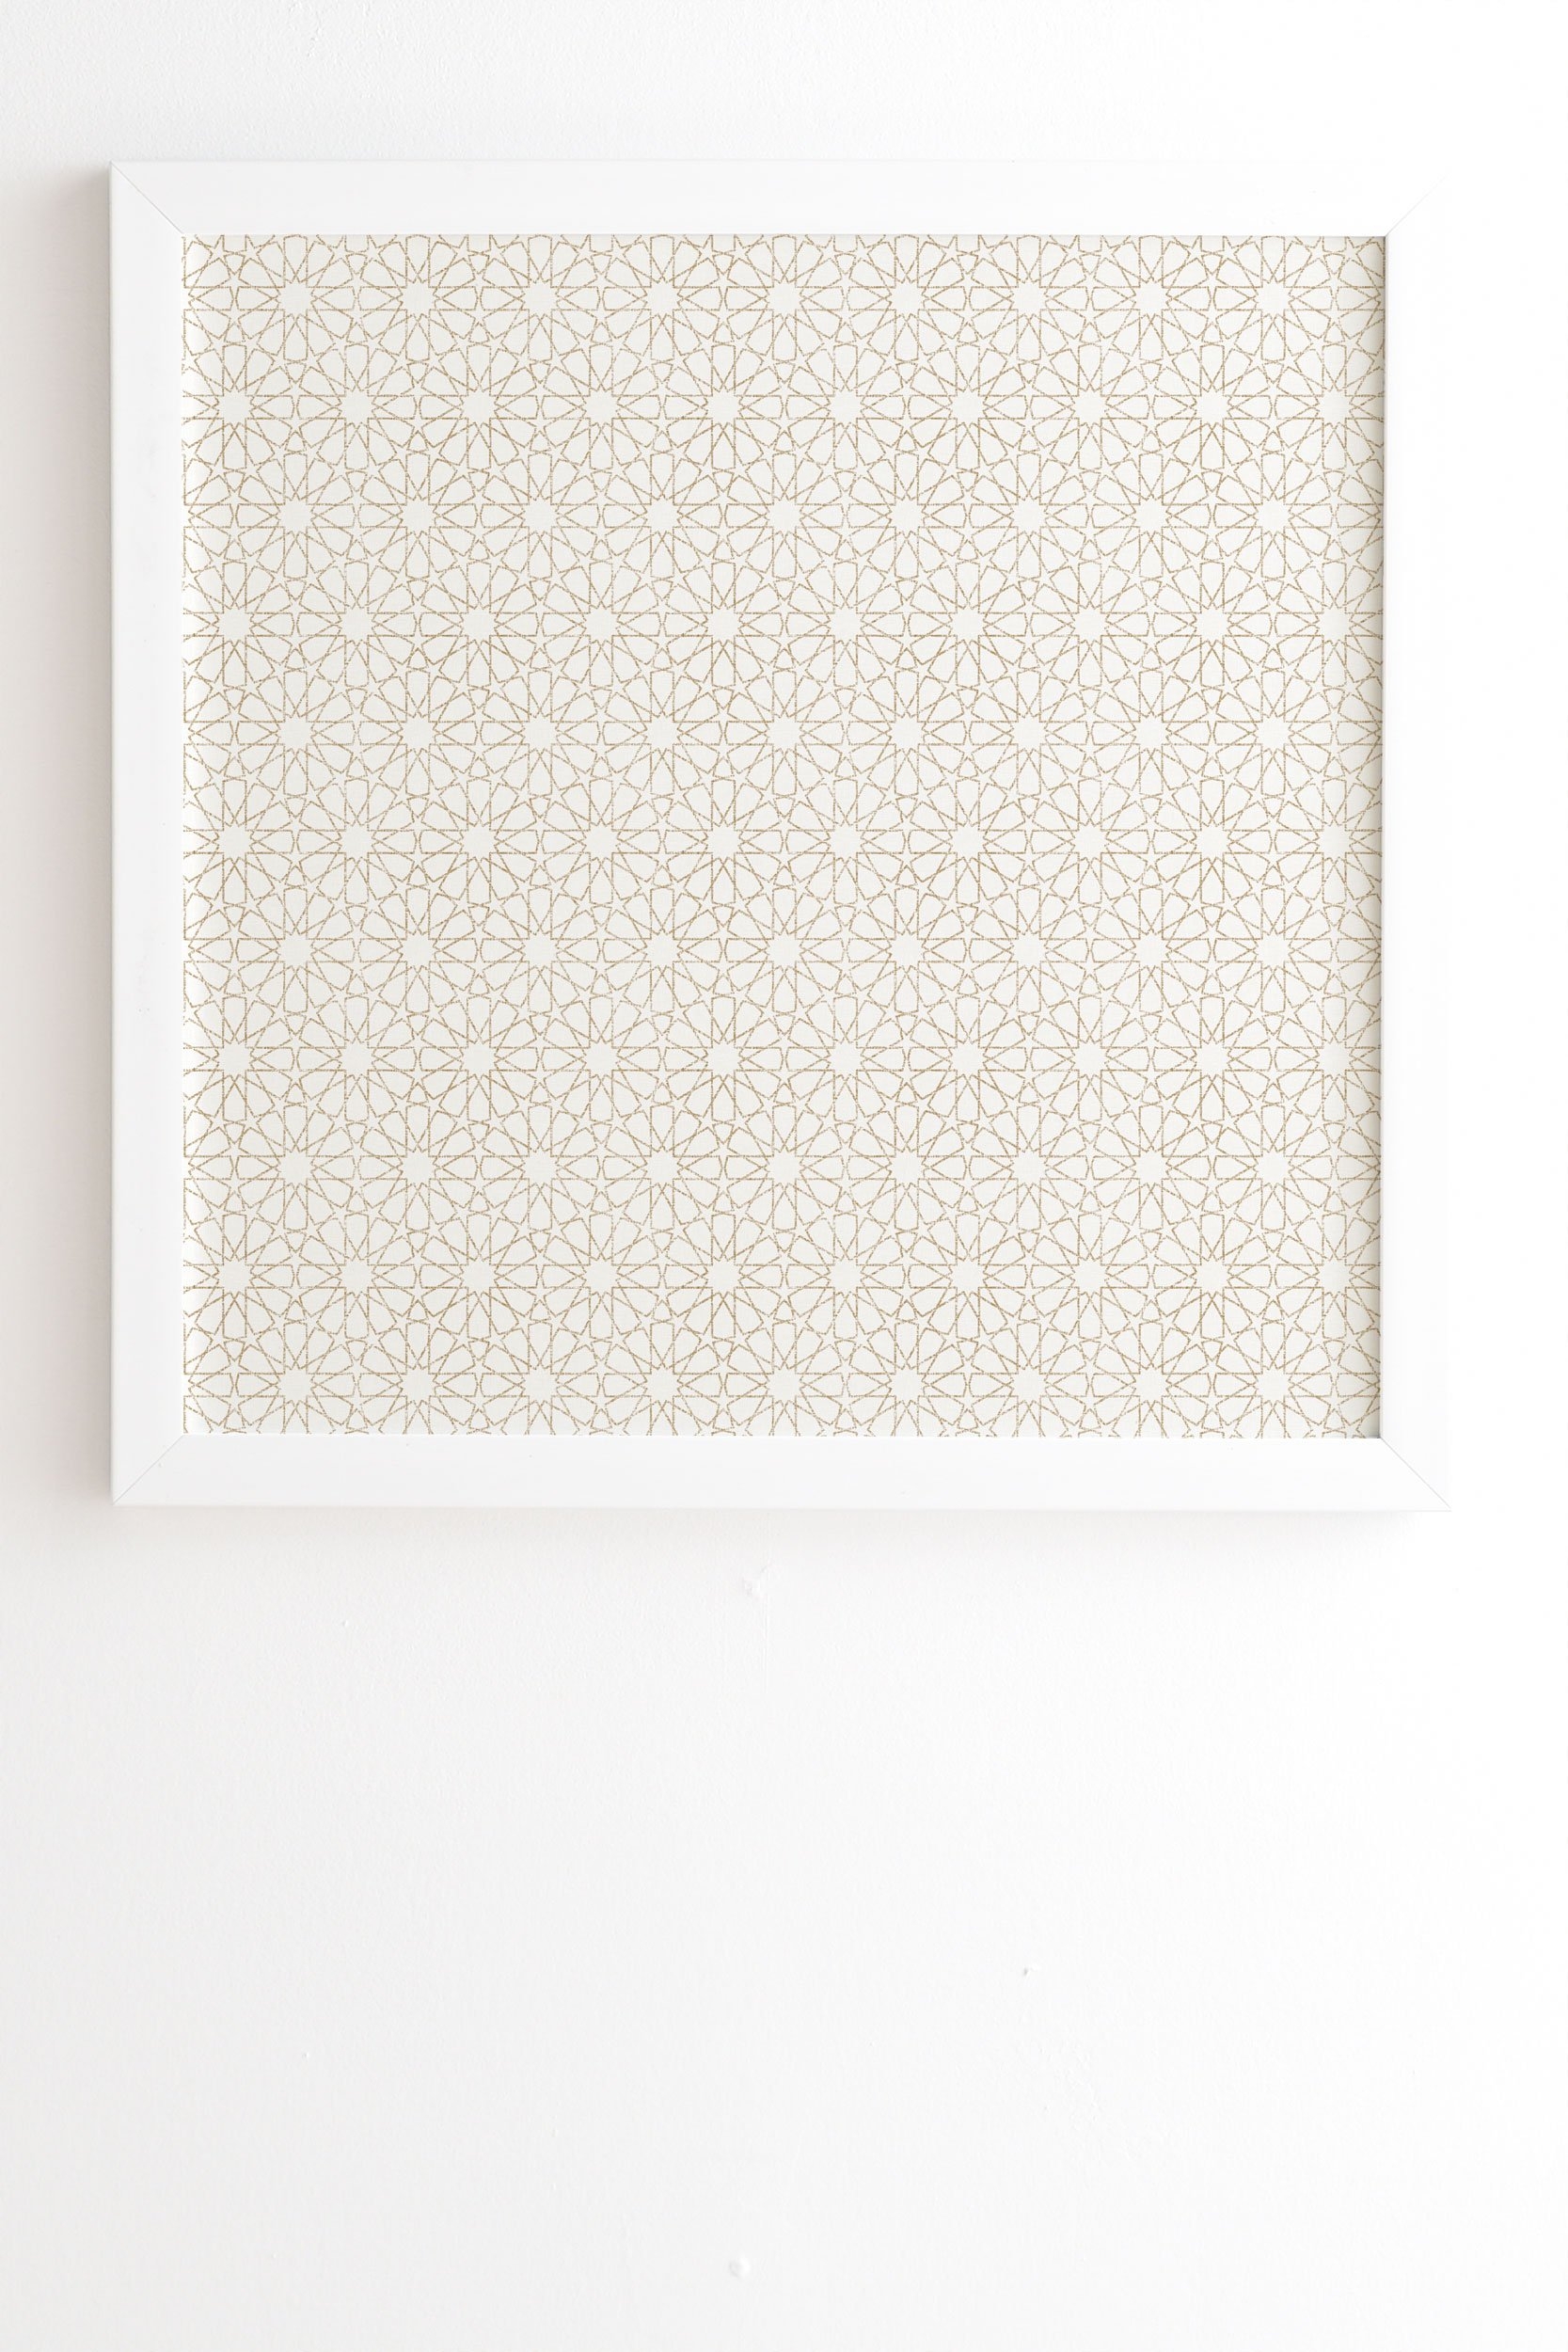 Holli Zollinger MAROK BEIGE White Framed Wall Art - 12" x 12" - Image 1